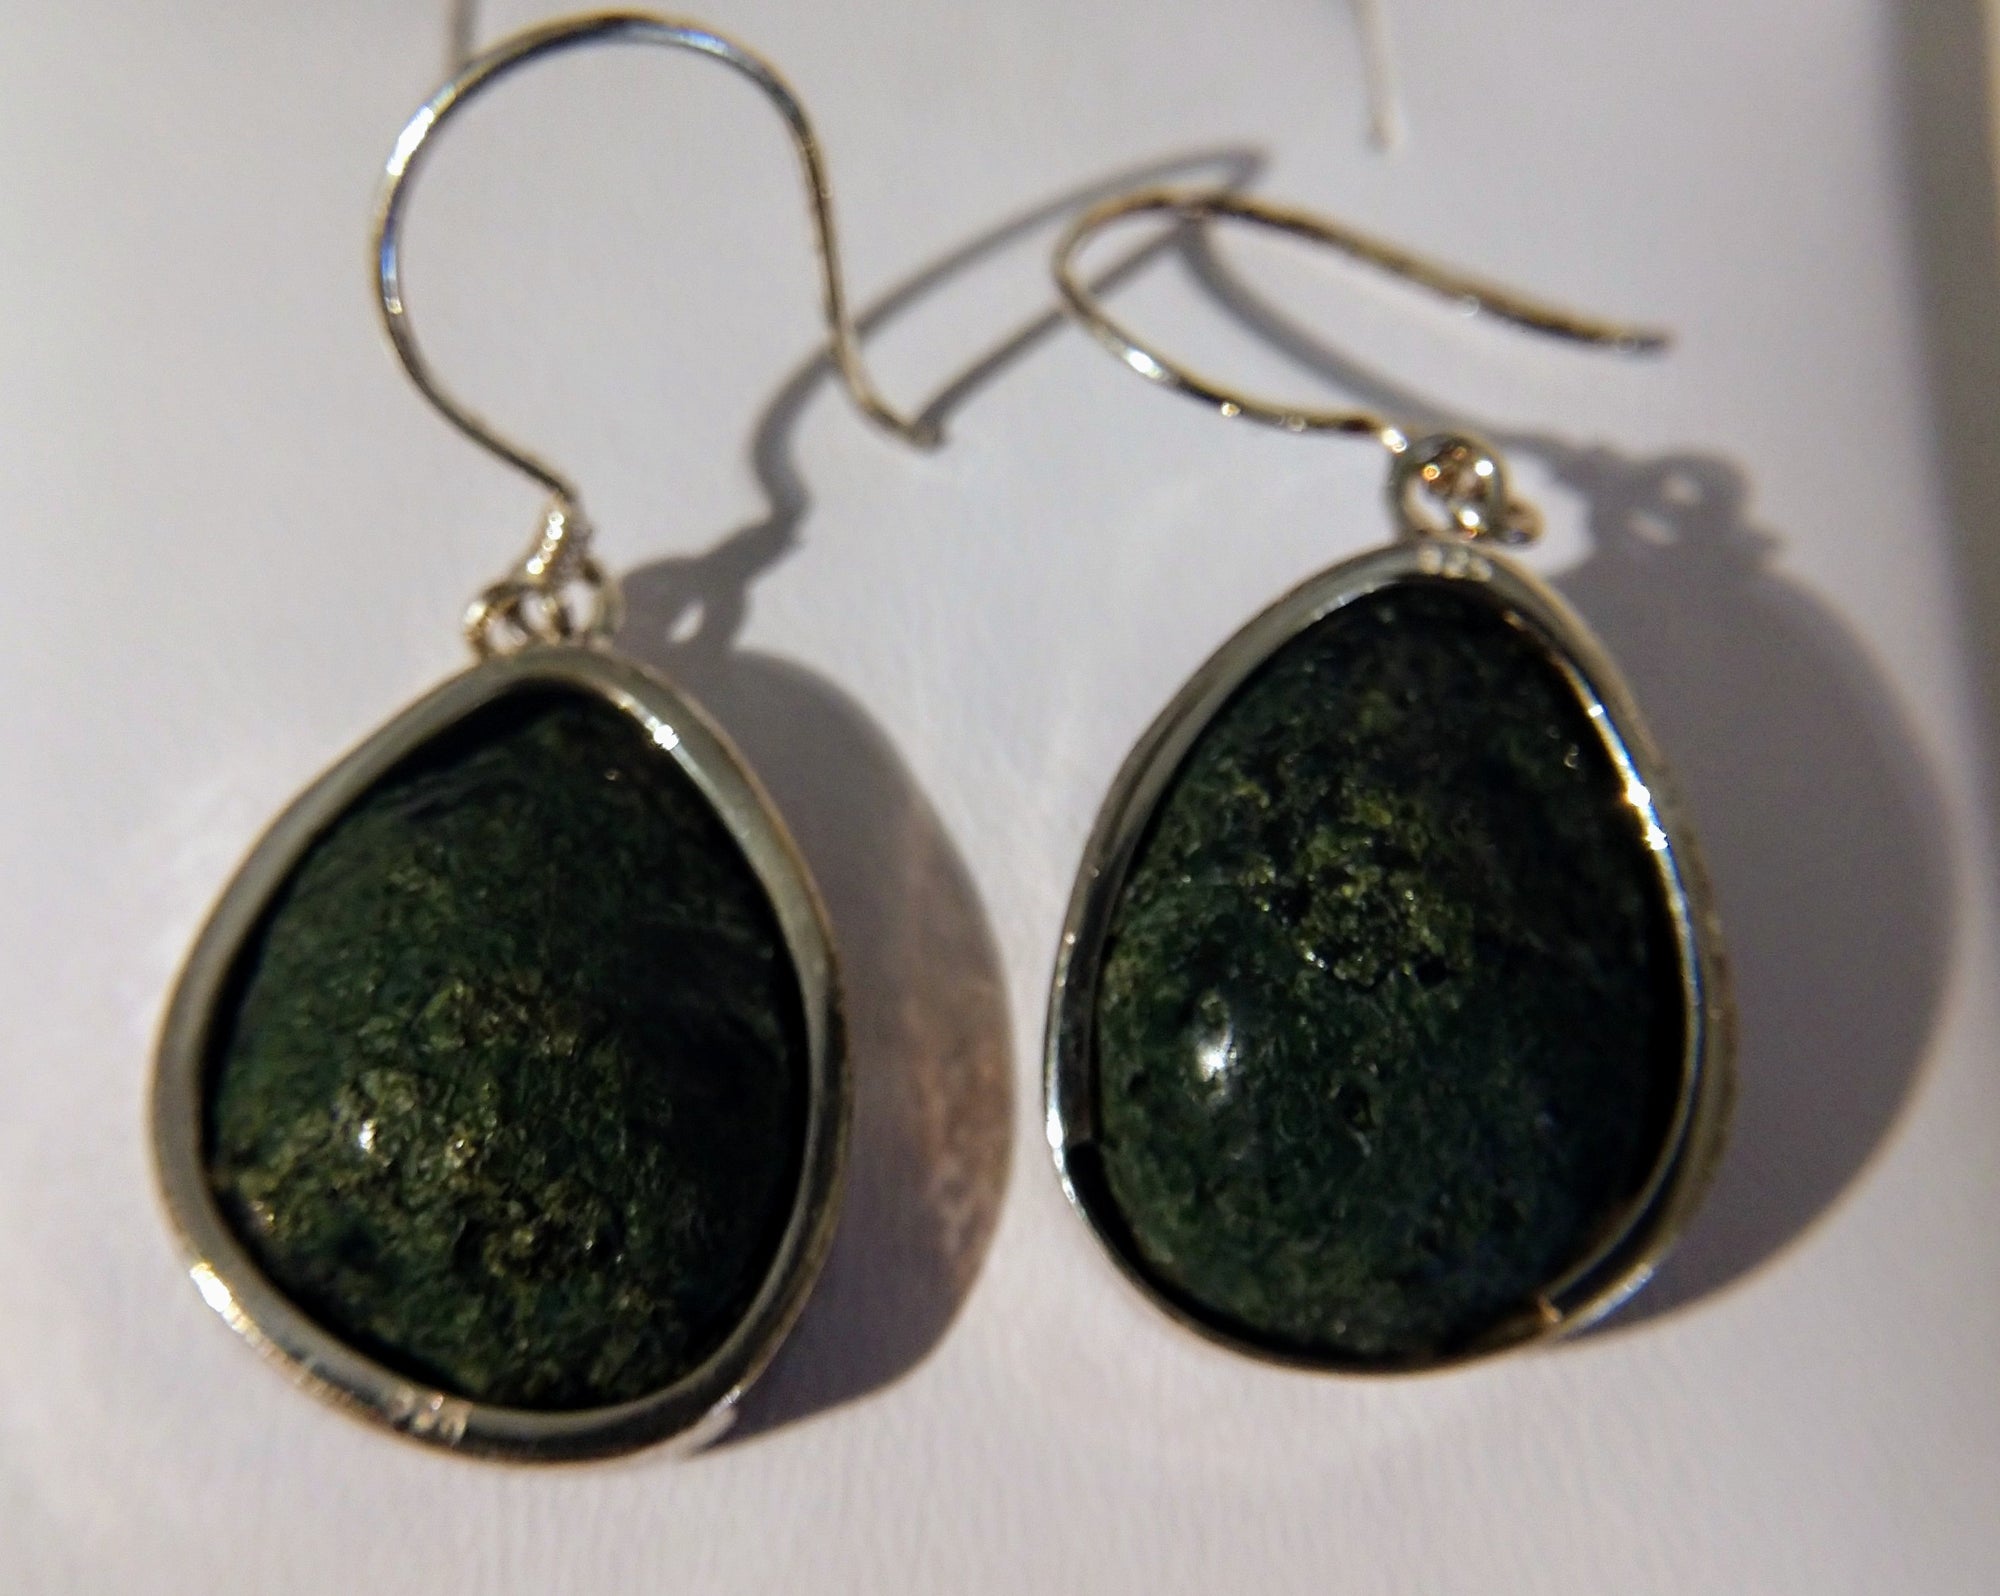 Geode earrings in sterling silver